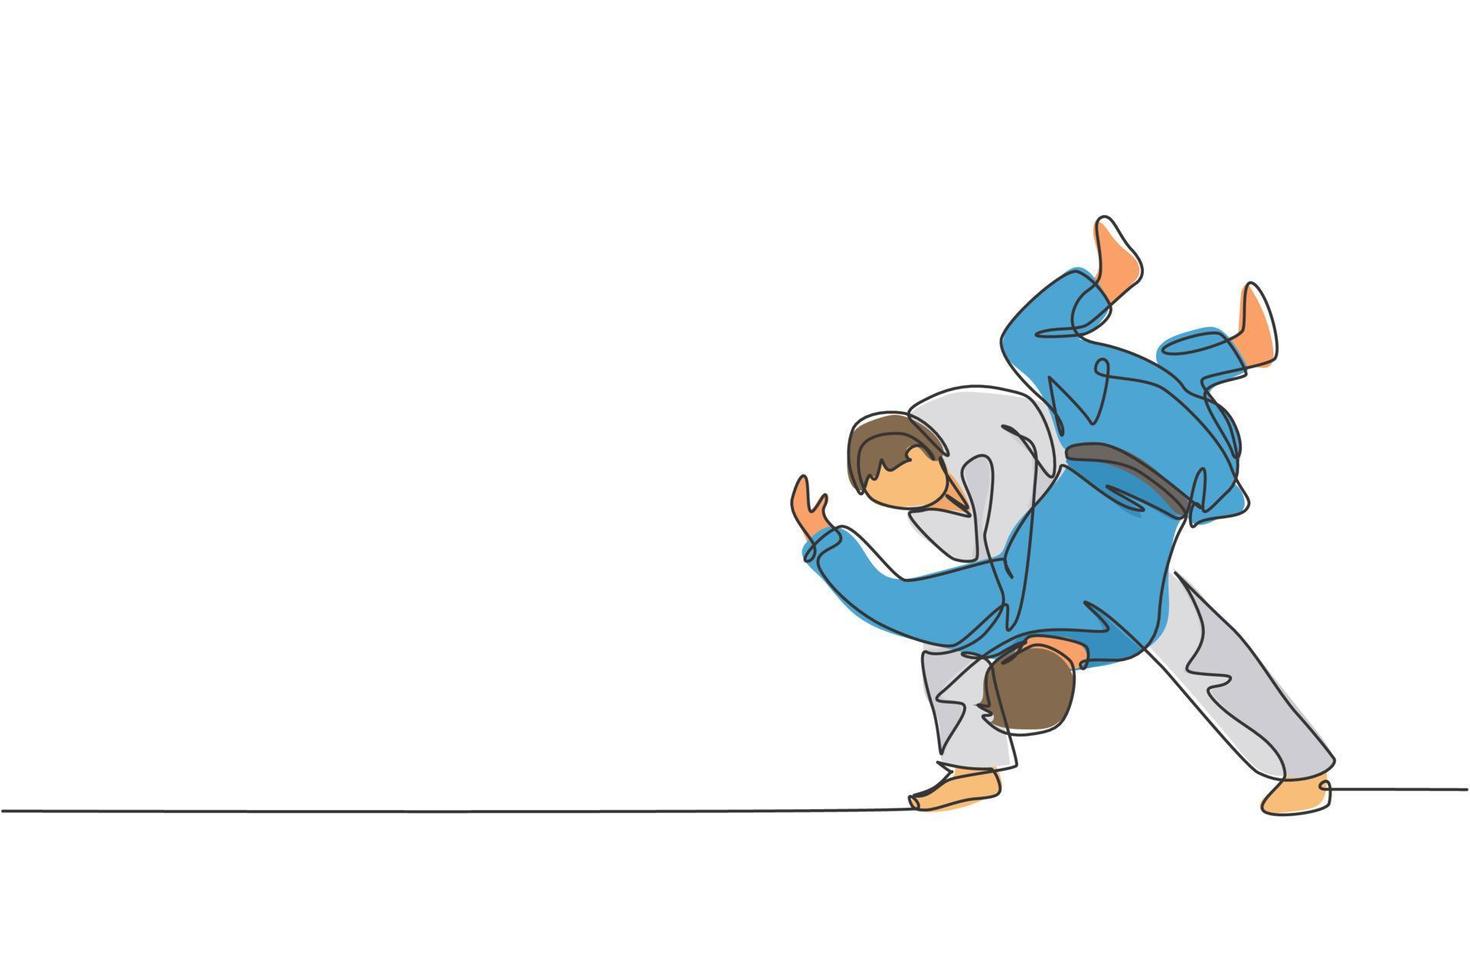 un dibujo de una sola línea de dos jóvenes luchadores judokas enérgicos luchan luchando en el centro de gimnasia ilustración gráfica vectorial. concepto de competición deportiva de artes marciales. diseño moderno de dibujo de línea continua vector